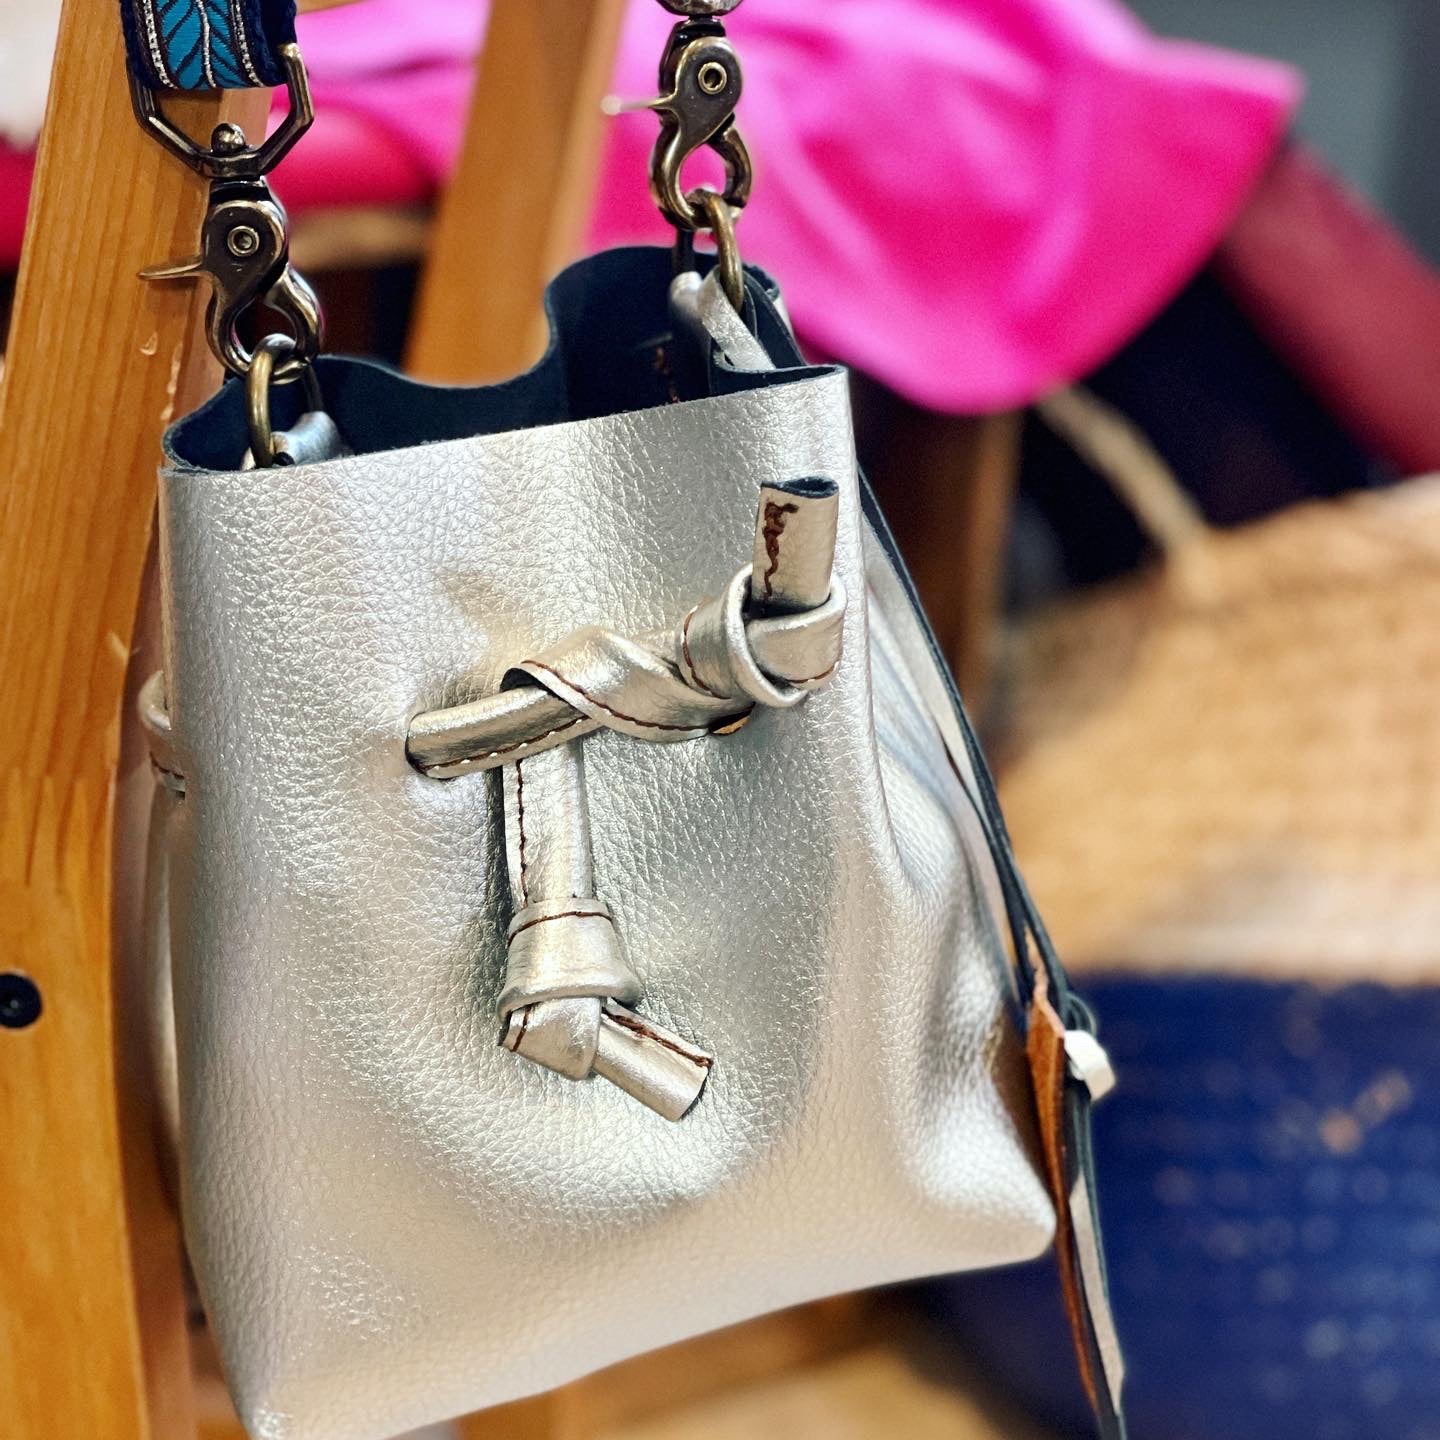 Silver Metallic Leather Mini Bucket Bag